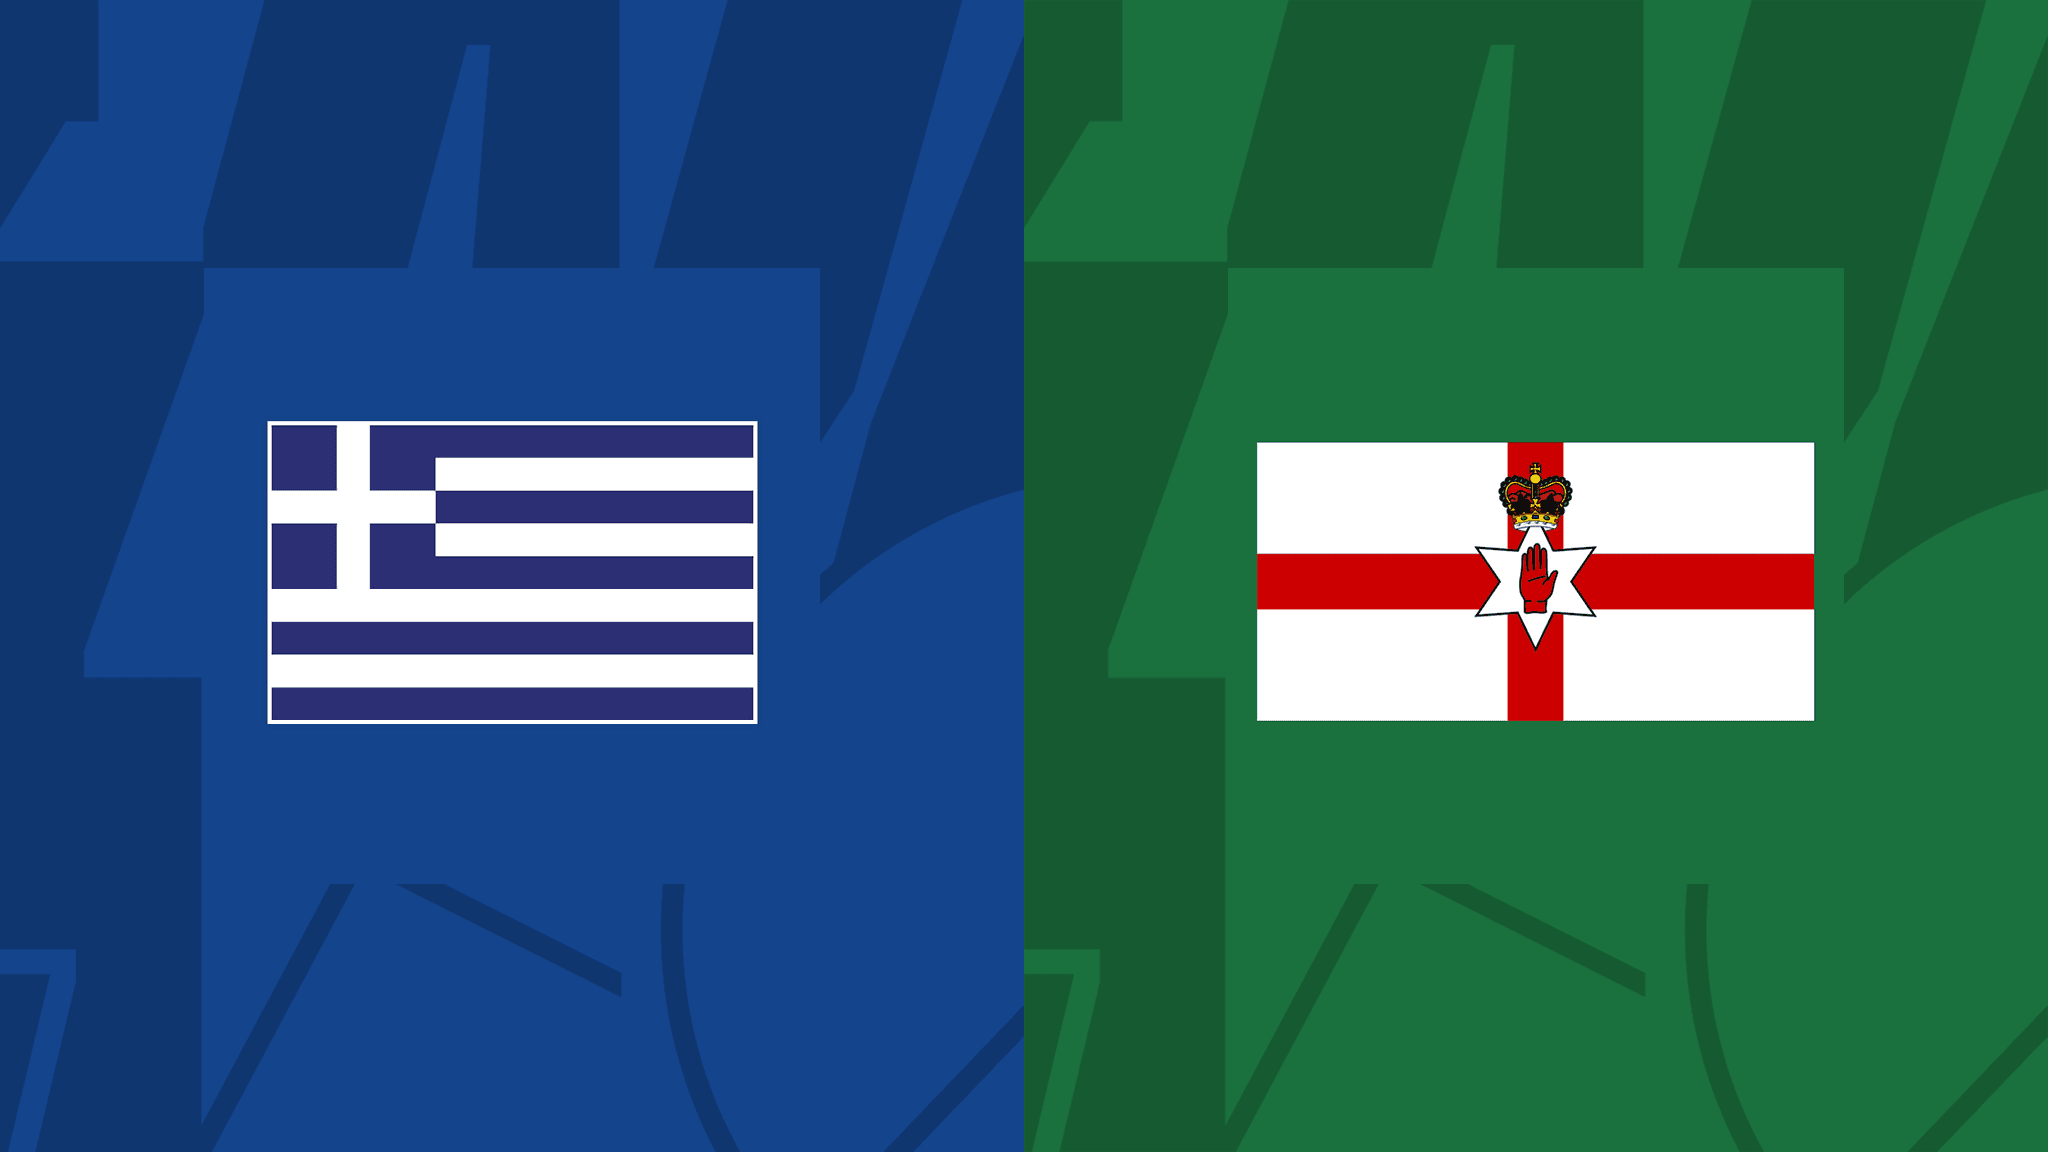 مباراة اليونان وايرلندا الشمالية فى دوري الأمم الأوروبية 27 سبتمبر 2022 Greece VS Northern Ireland